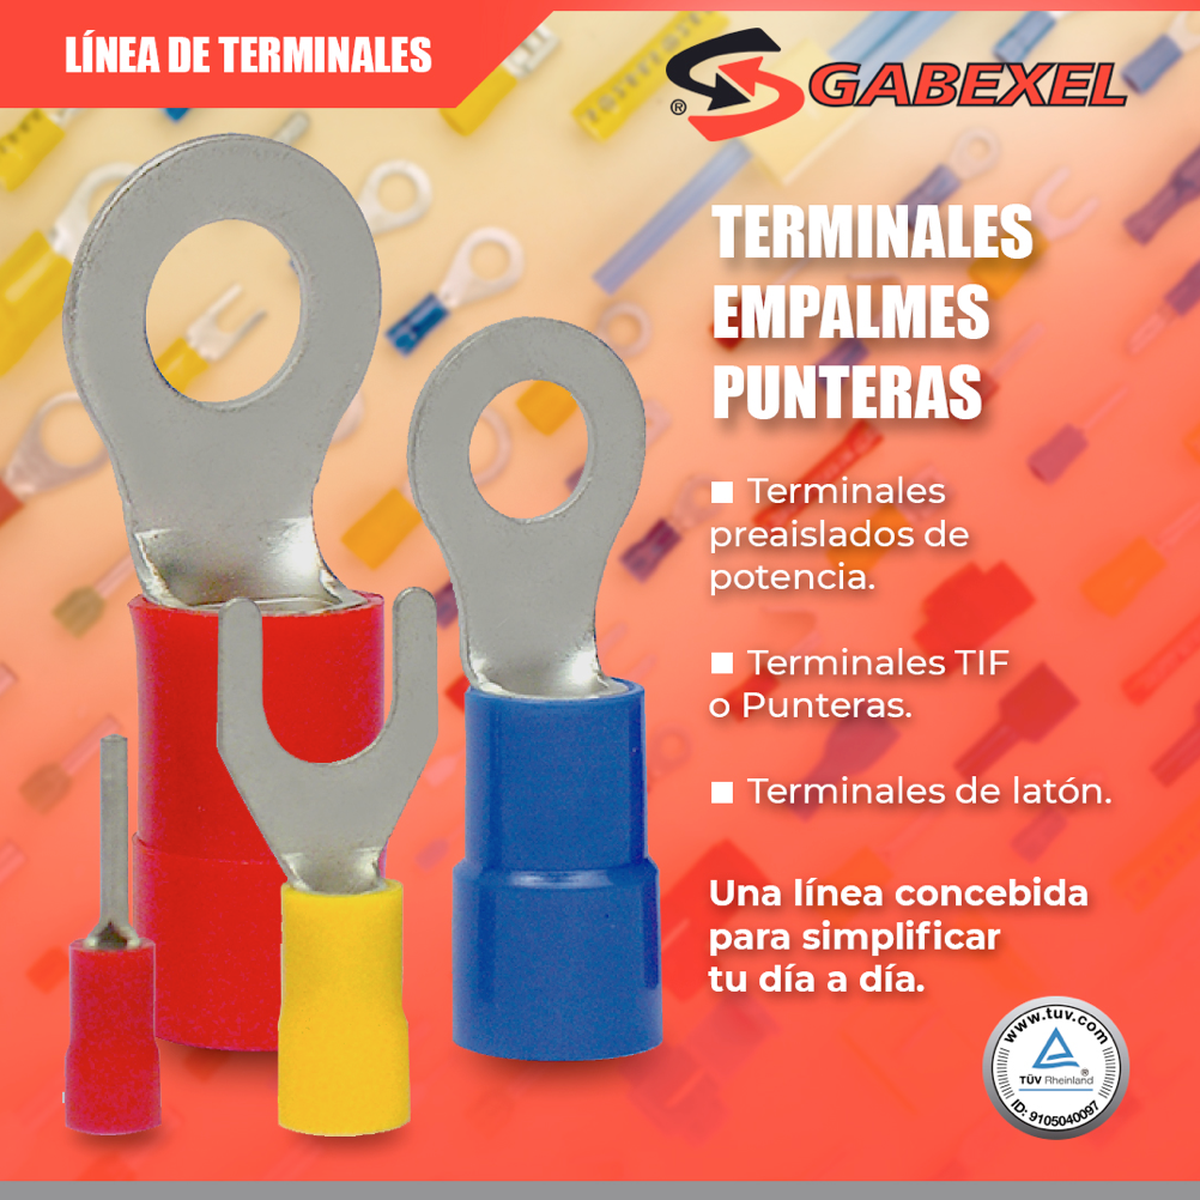 Gabexel - Terminales, empalmes y punteras